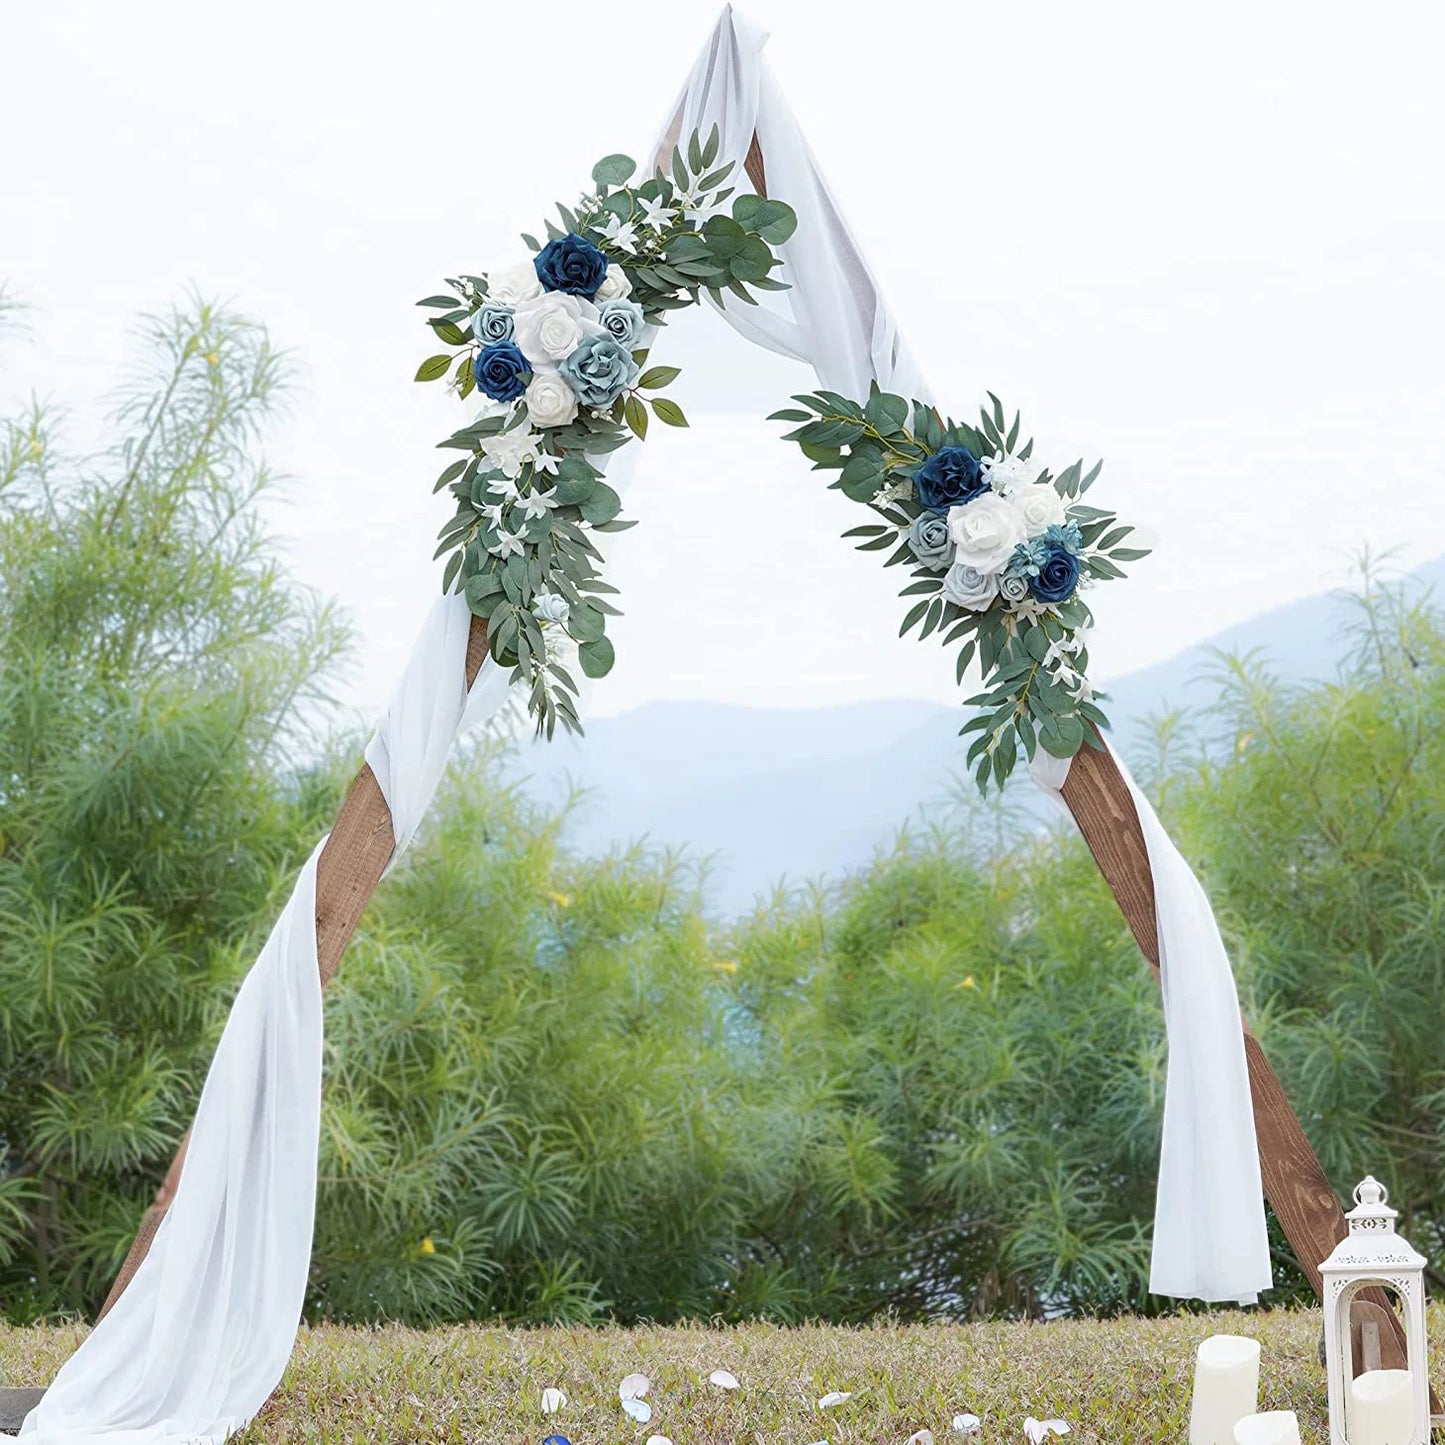 مجموعة زهور قوس الزفاف الاصطناعية من Yannew ستائر بوهو مغبرة باللون الأزرق والأوكالبتوس جارلاند لتزيين الزفاف علامة ترحيب